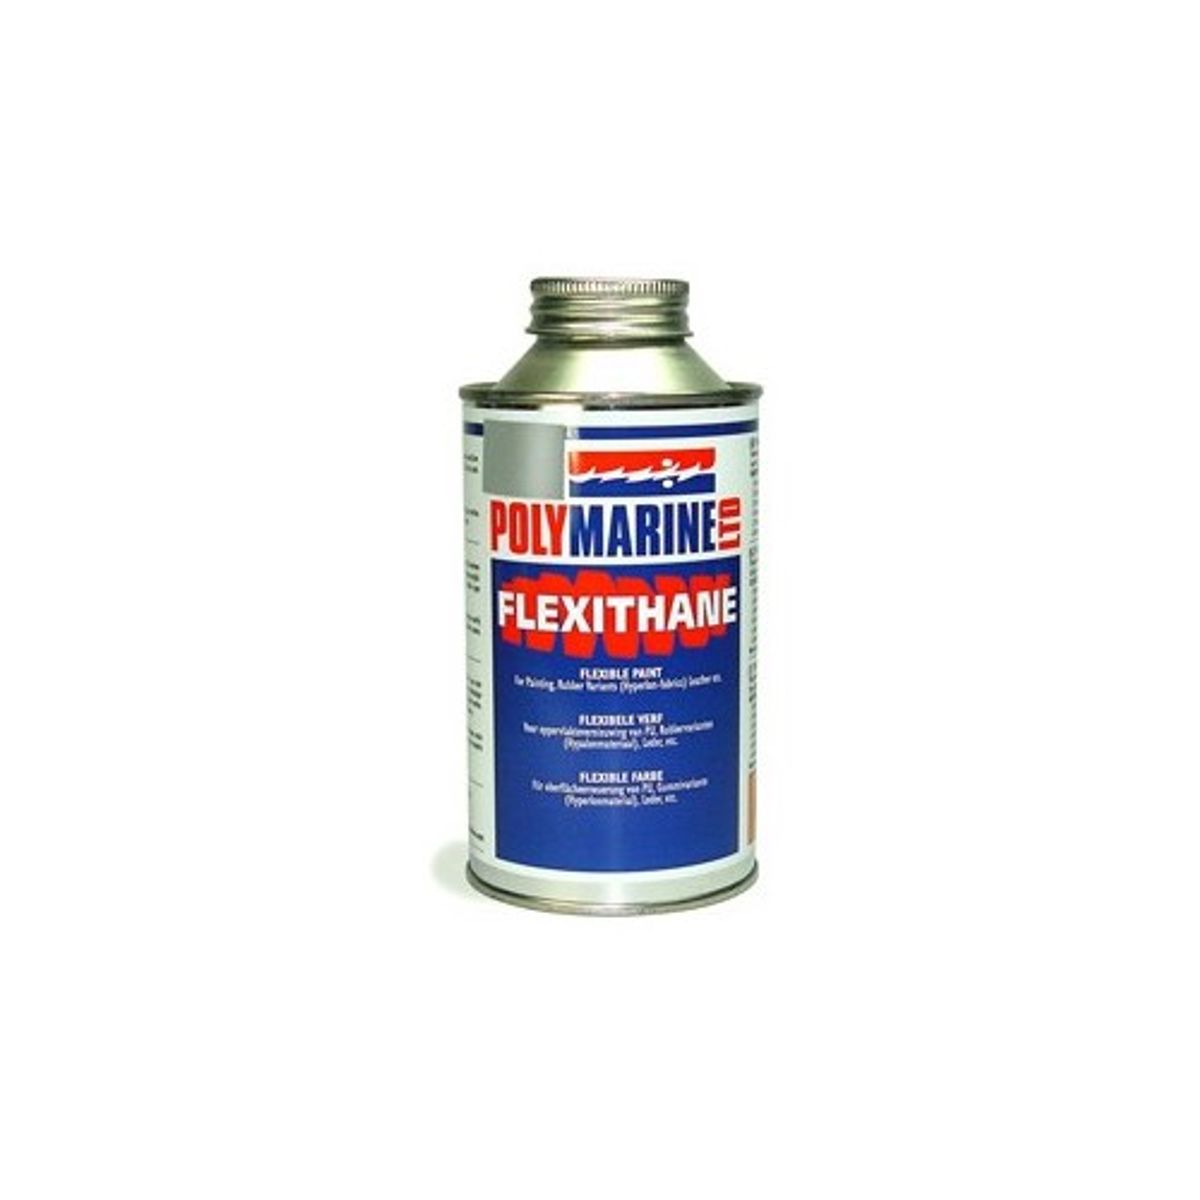 Polymarine Flexithane Hypalon Paint Grey 500ml